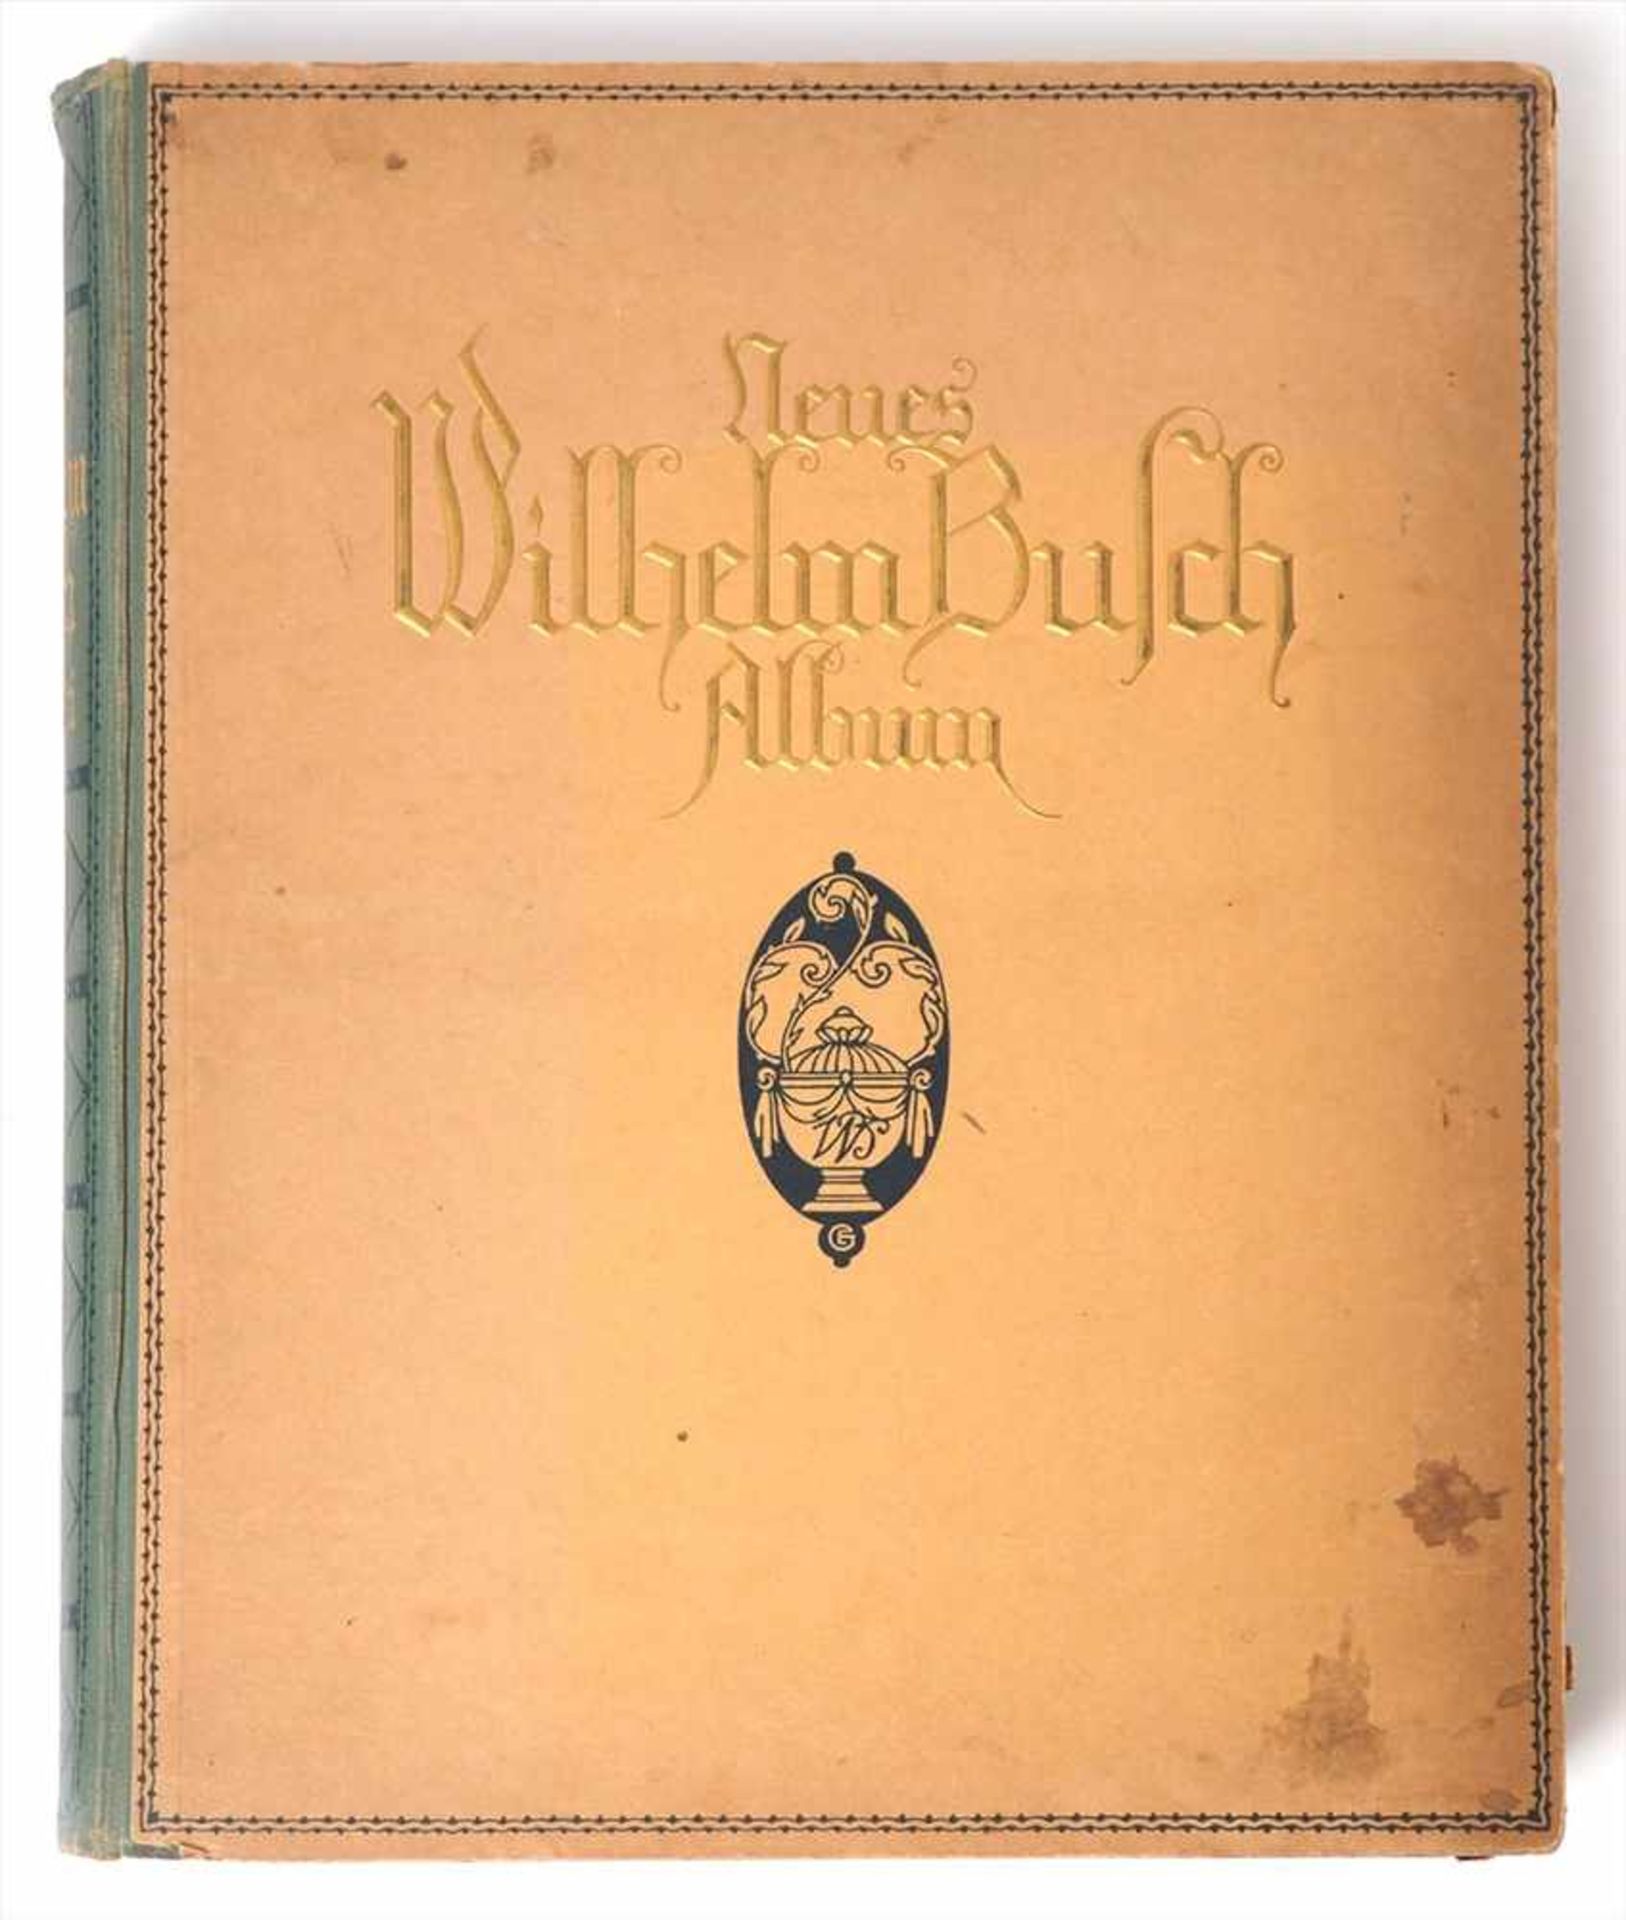 Wilhelm-Busch-AlbumUm 1900. Hermann Klemm, Berlin. Reich bebildert. Pappeinband mit Leinenrücken.